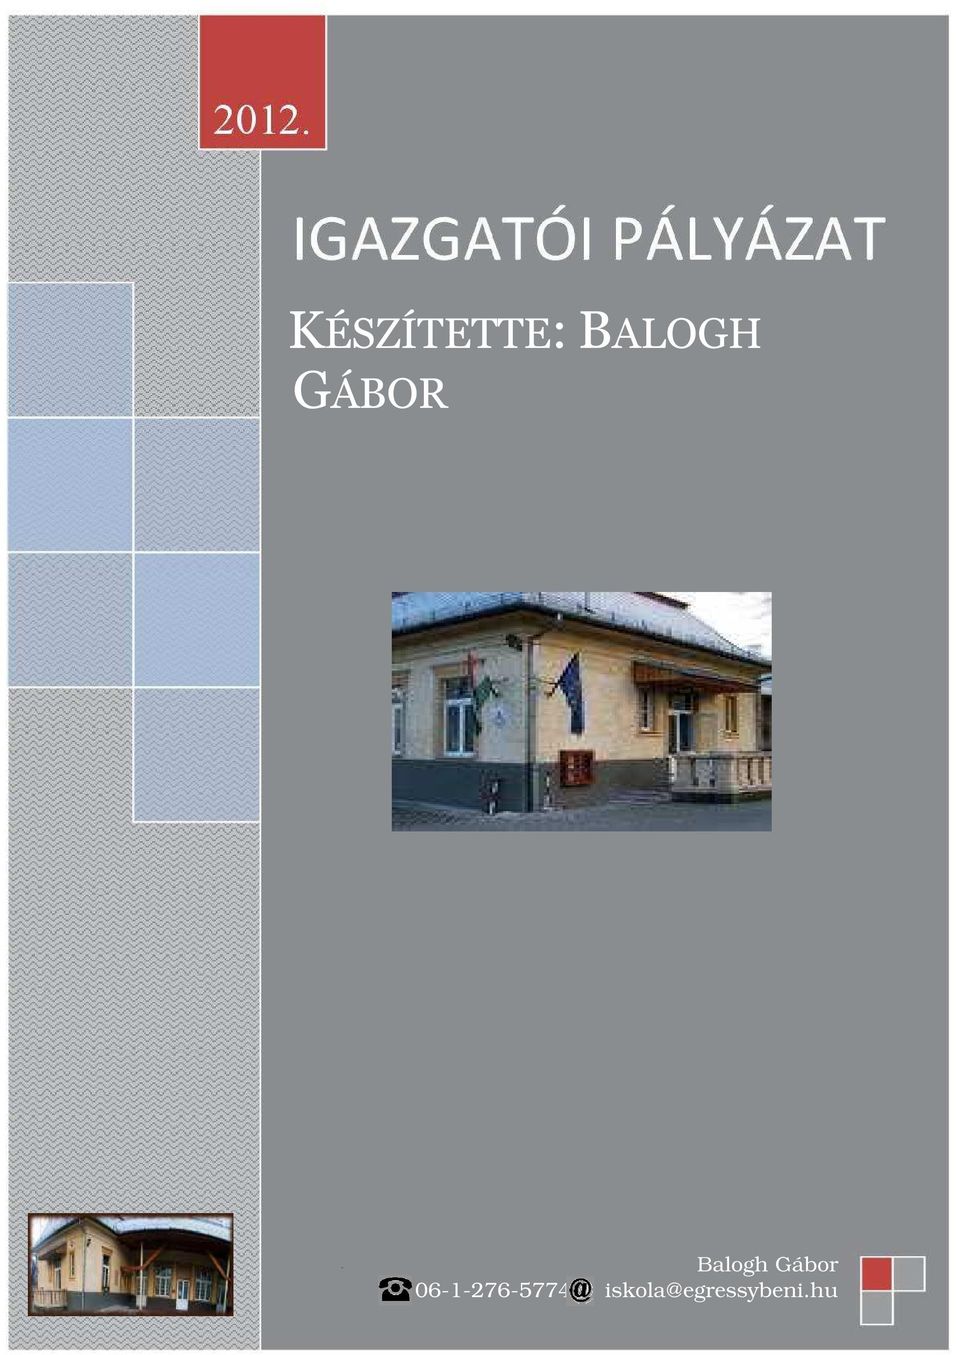 Balogh Gábor